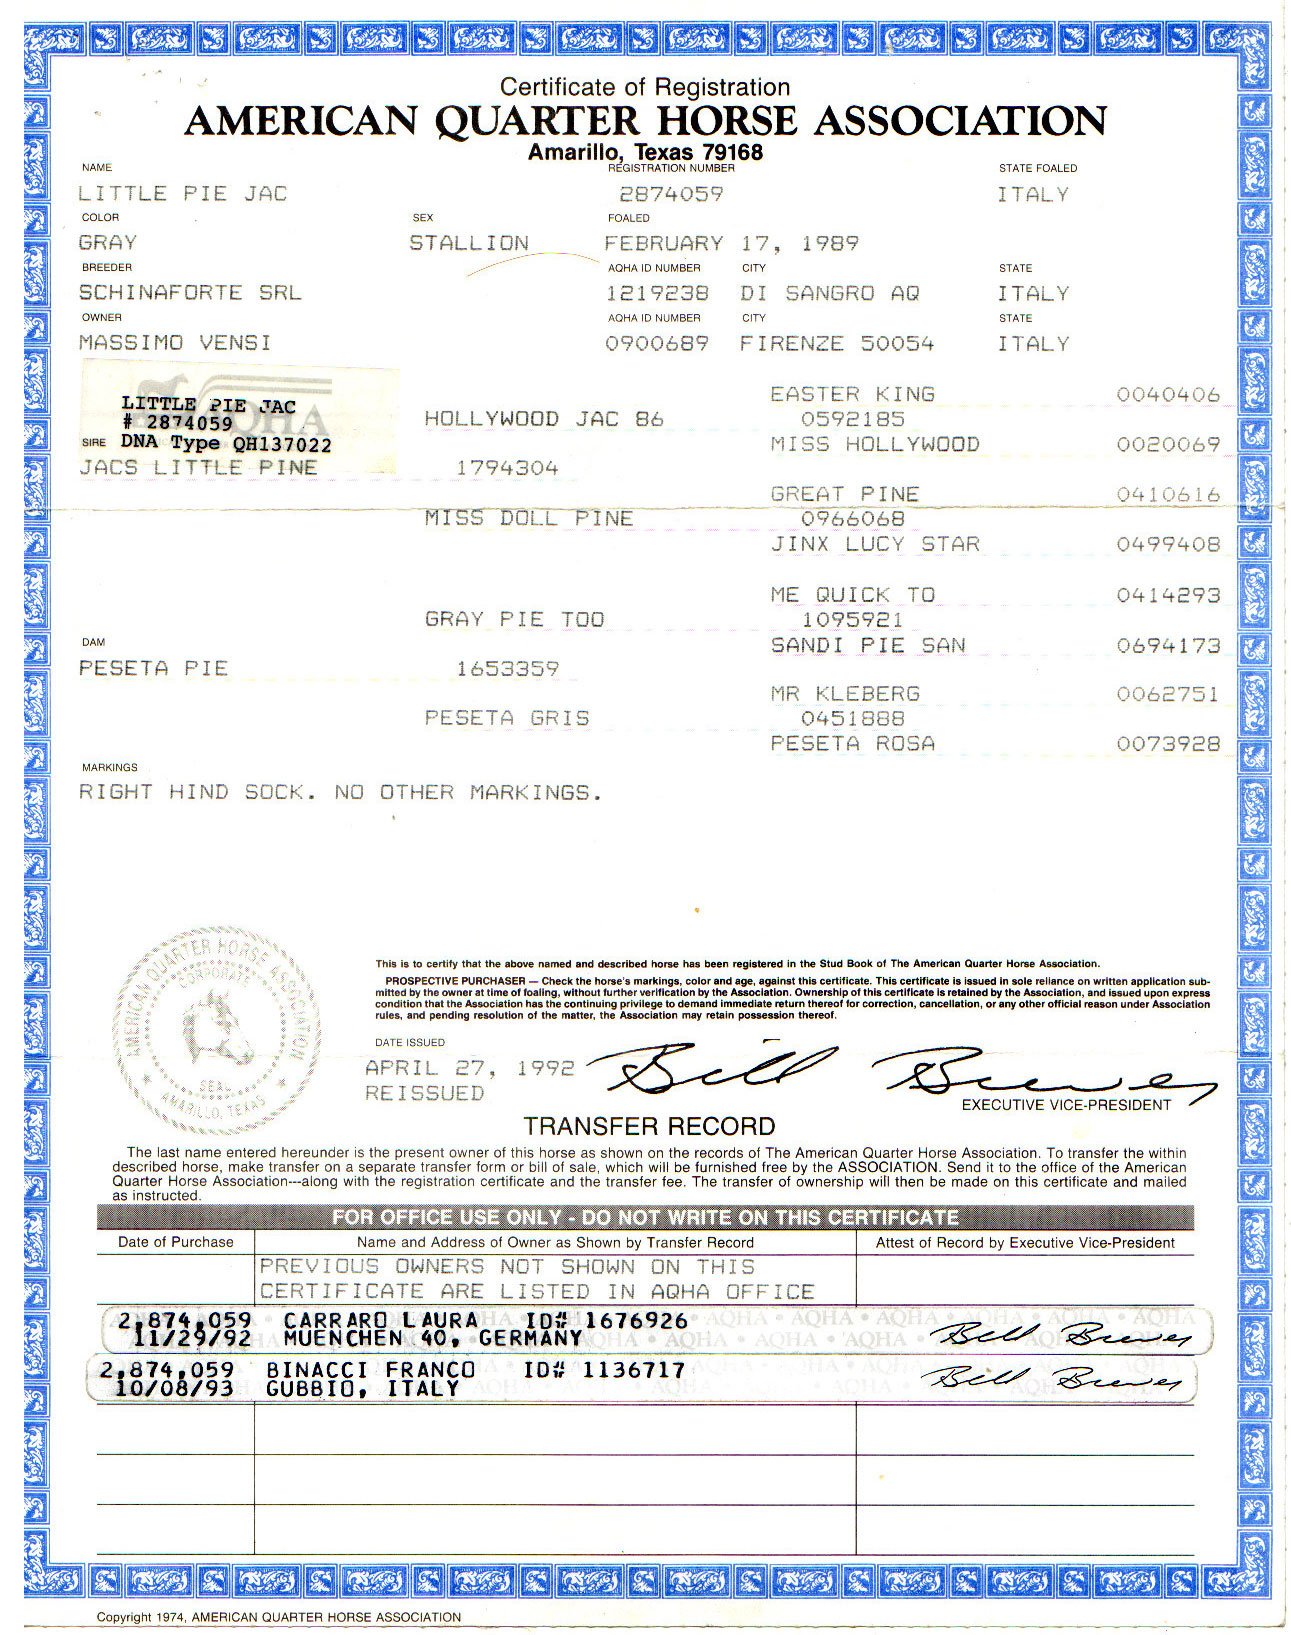 Little Pie Jac Certificate